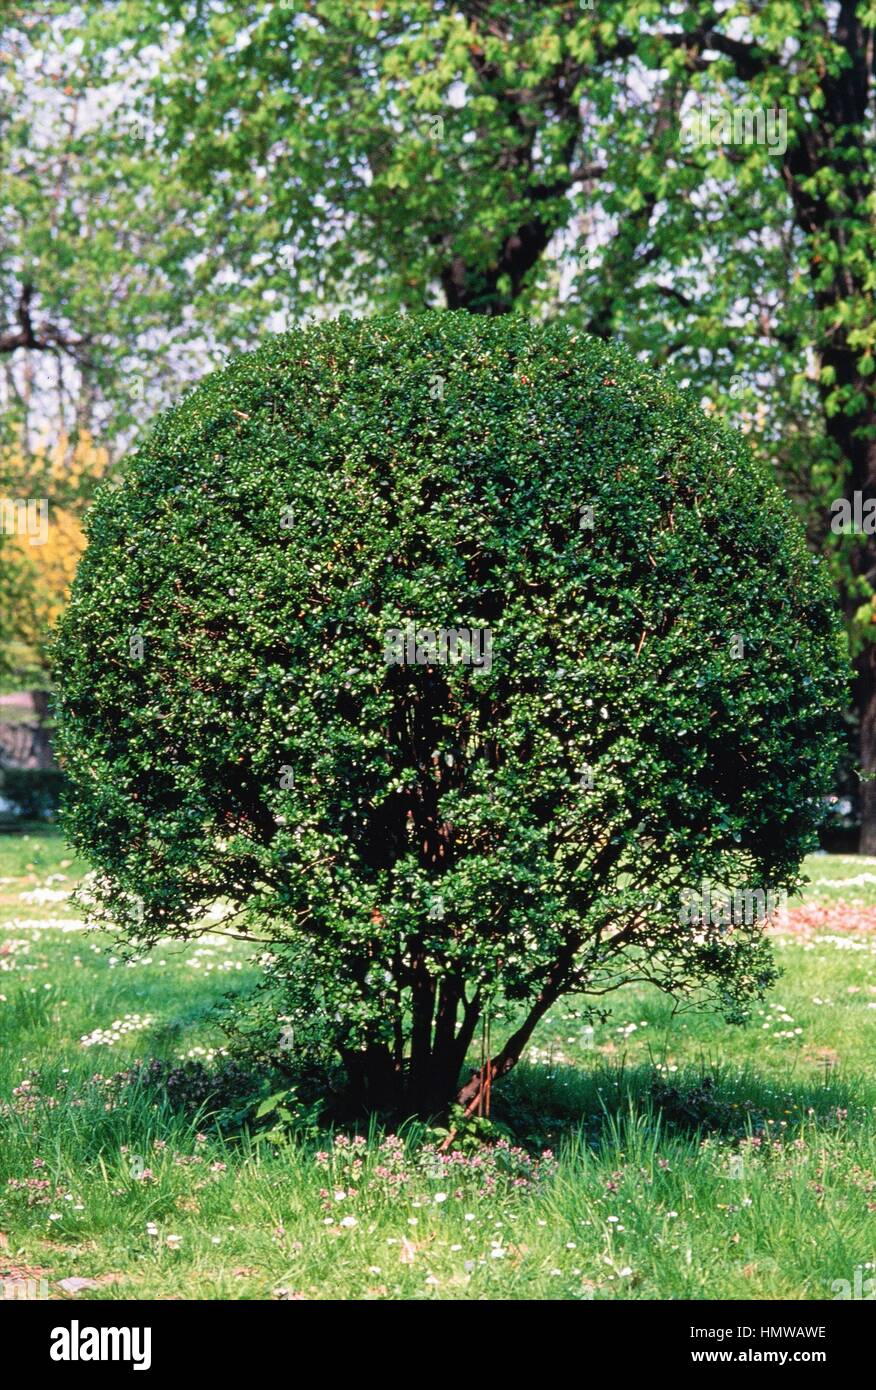 wax-leaved privet (ligustrum lucidum or ligustrum vulgare